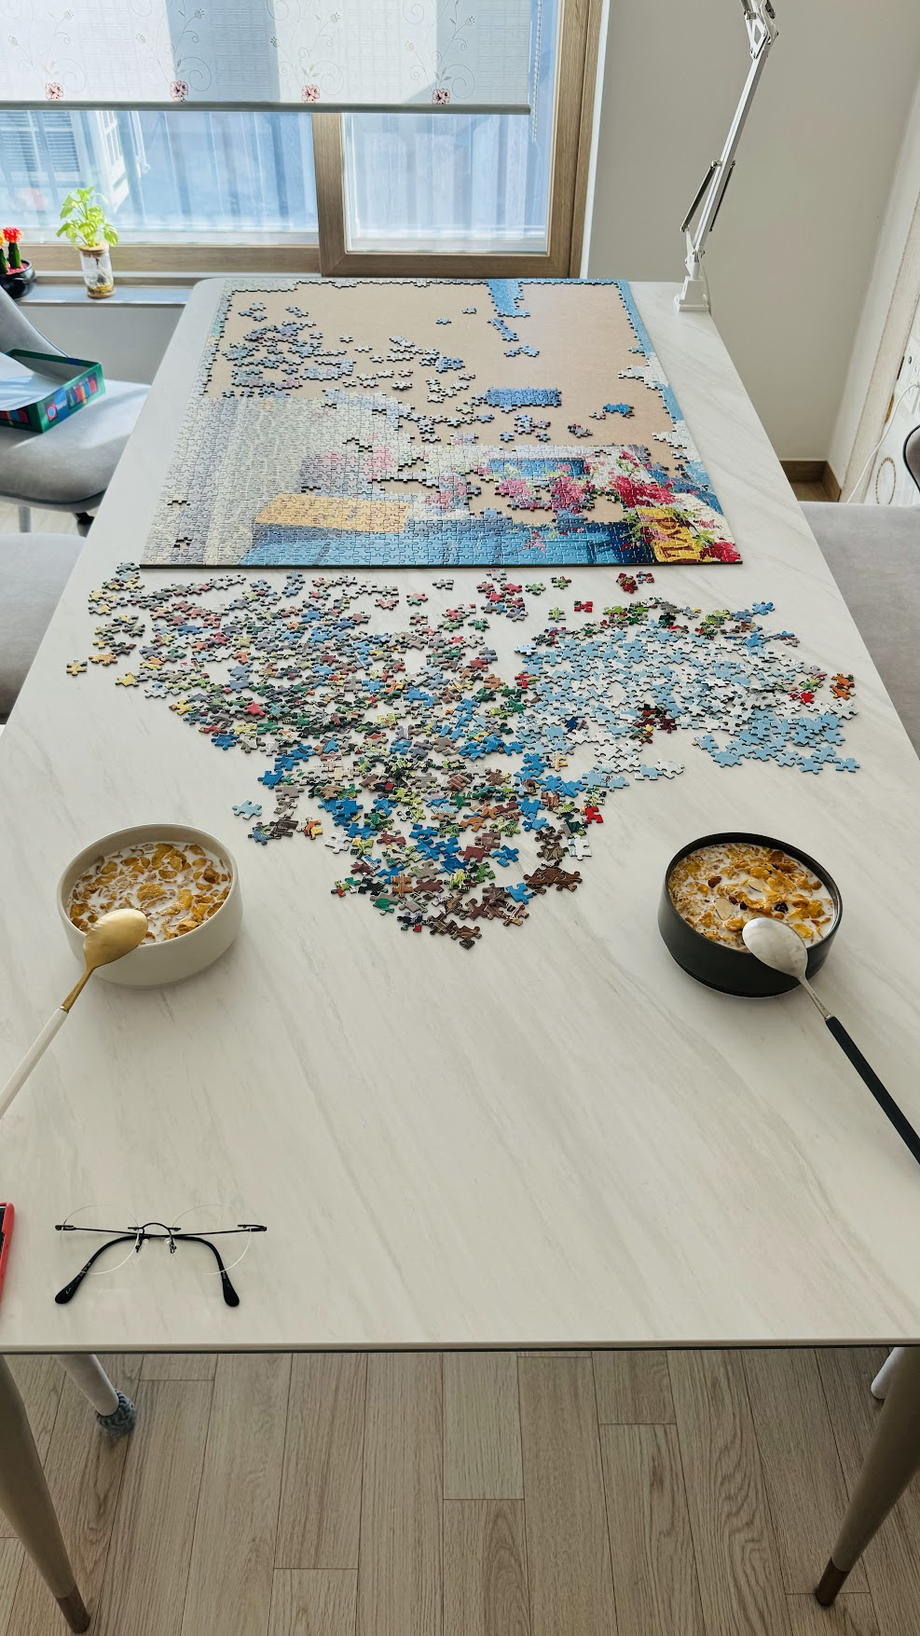 Foto do quebra-cabeça e cereais na mesa